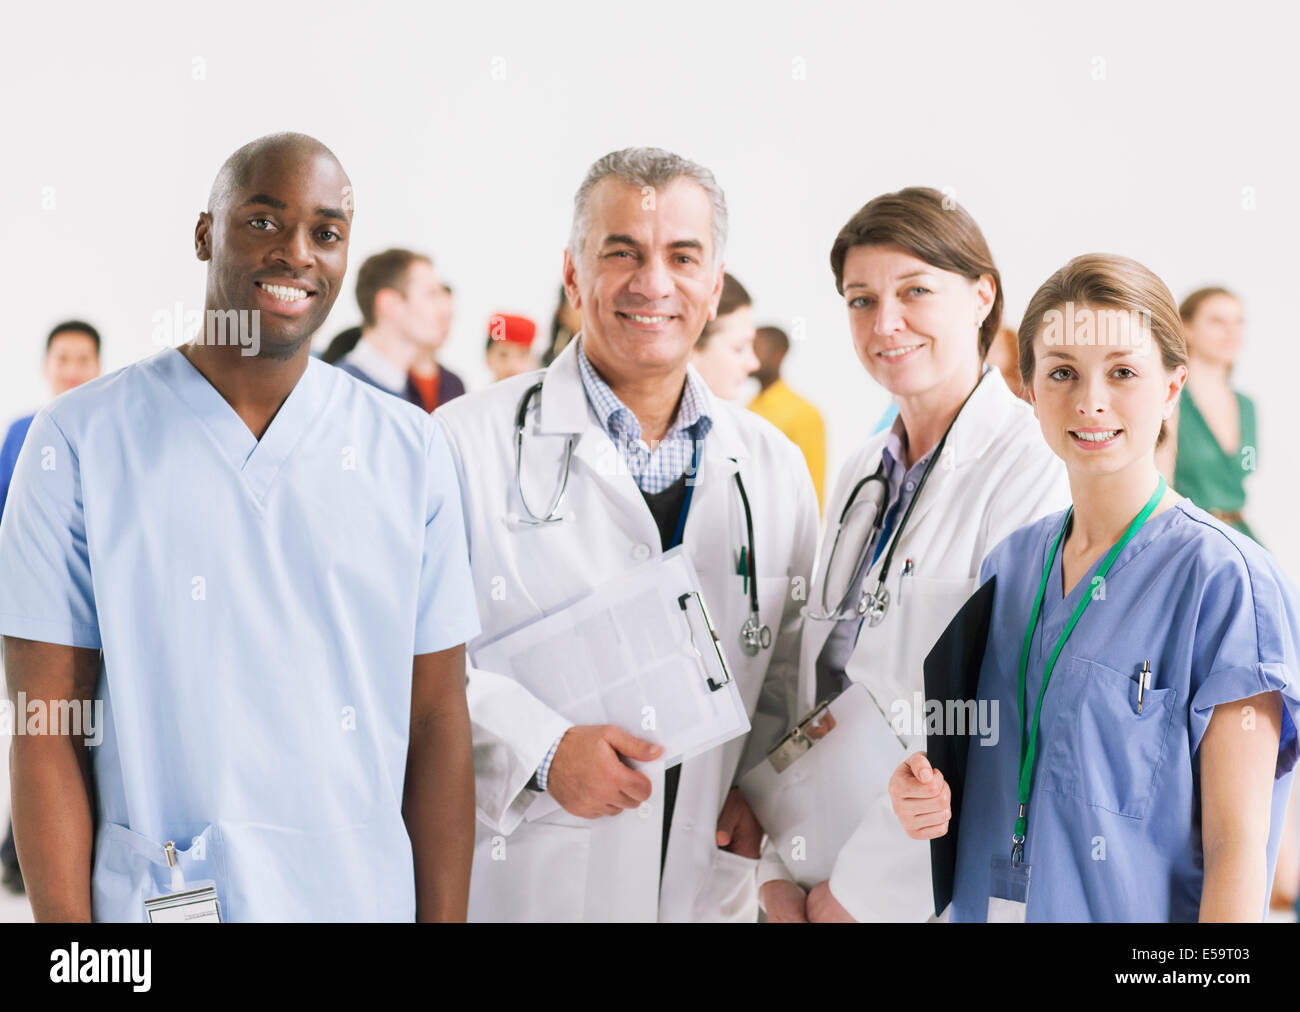 Retrato de médicos y enfermeras sonrientes Foto de stock